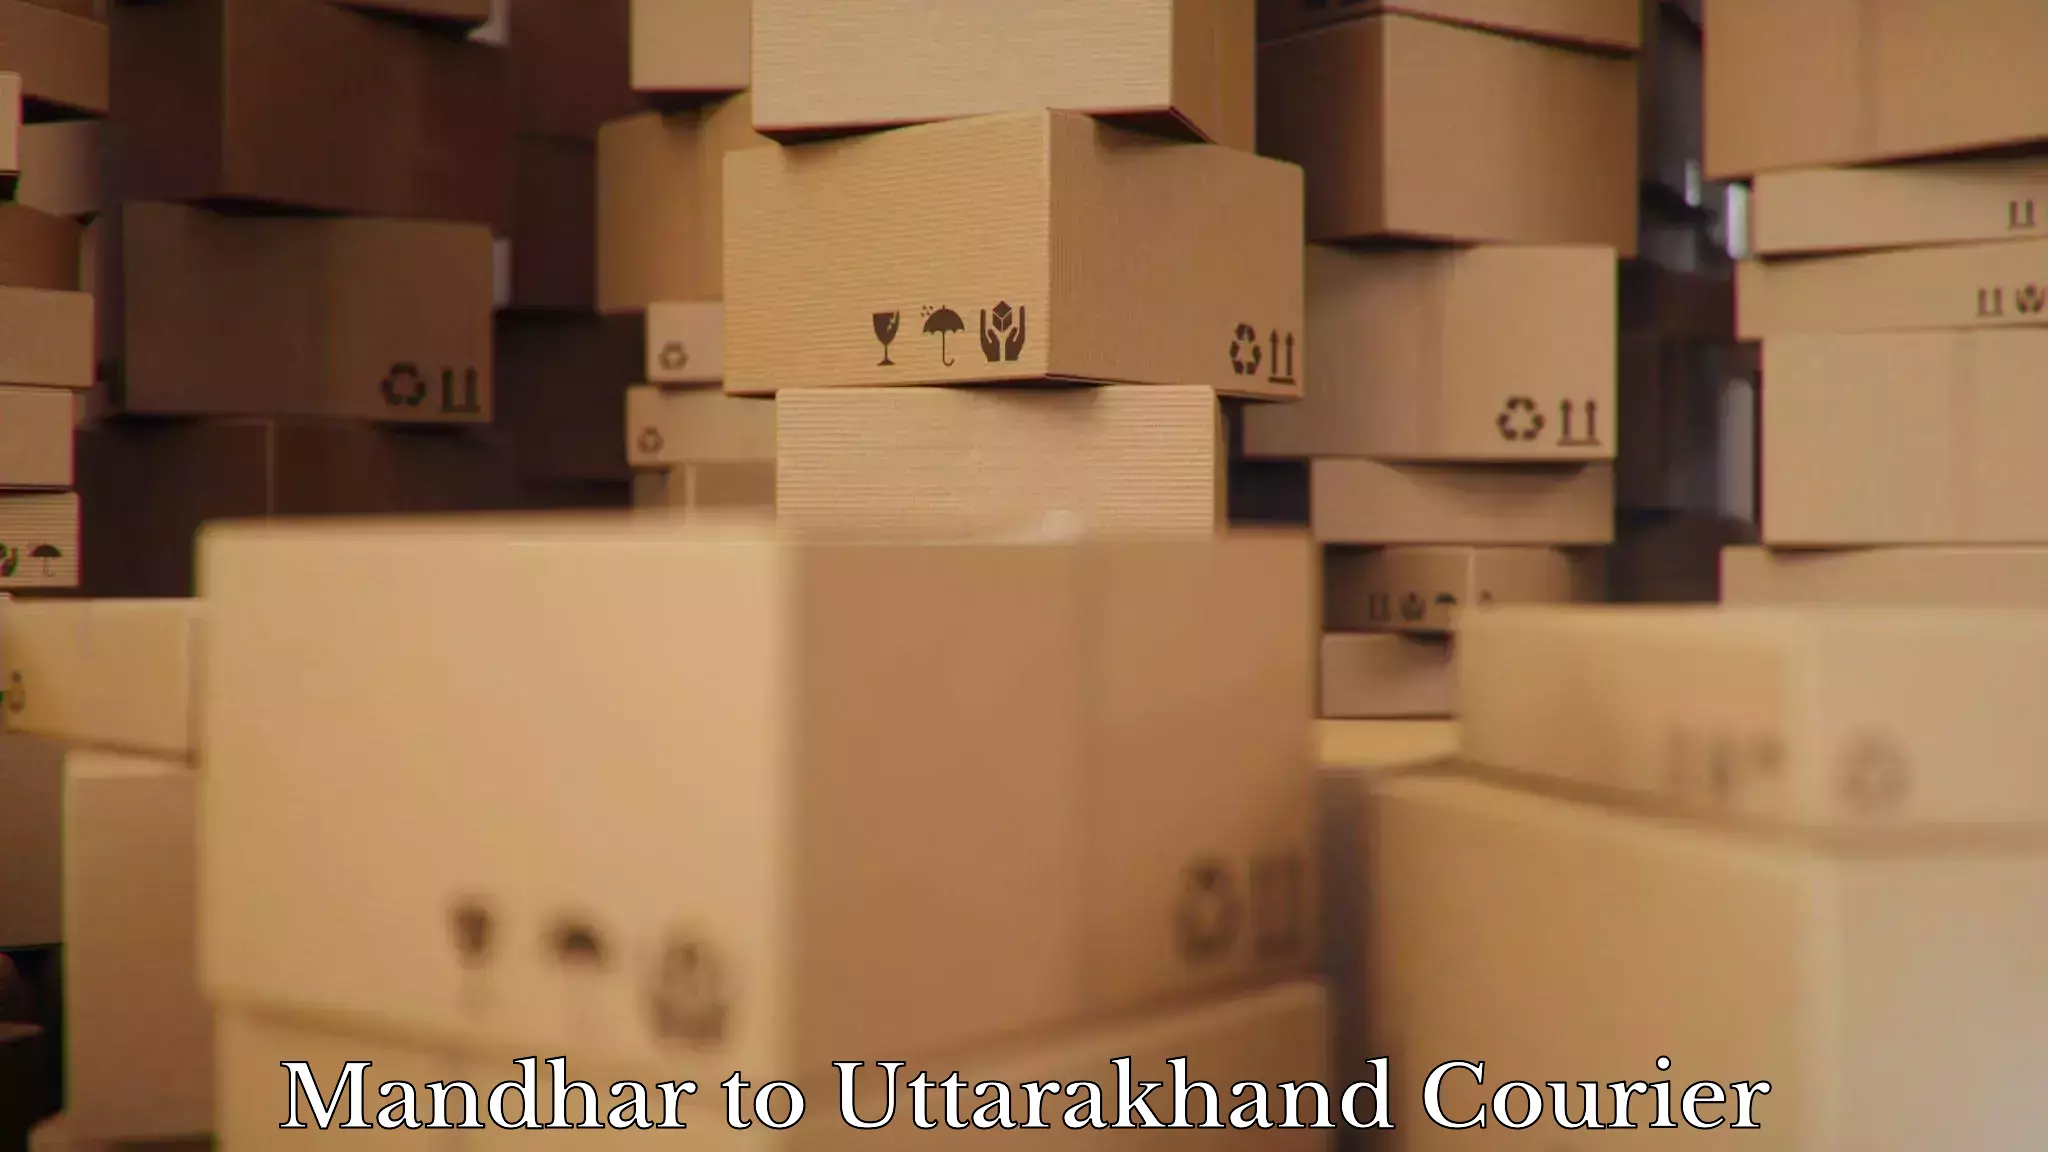 Furniture transport and storage Mandhar to Rudraprayag